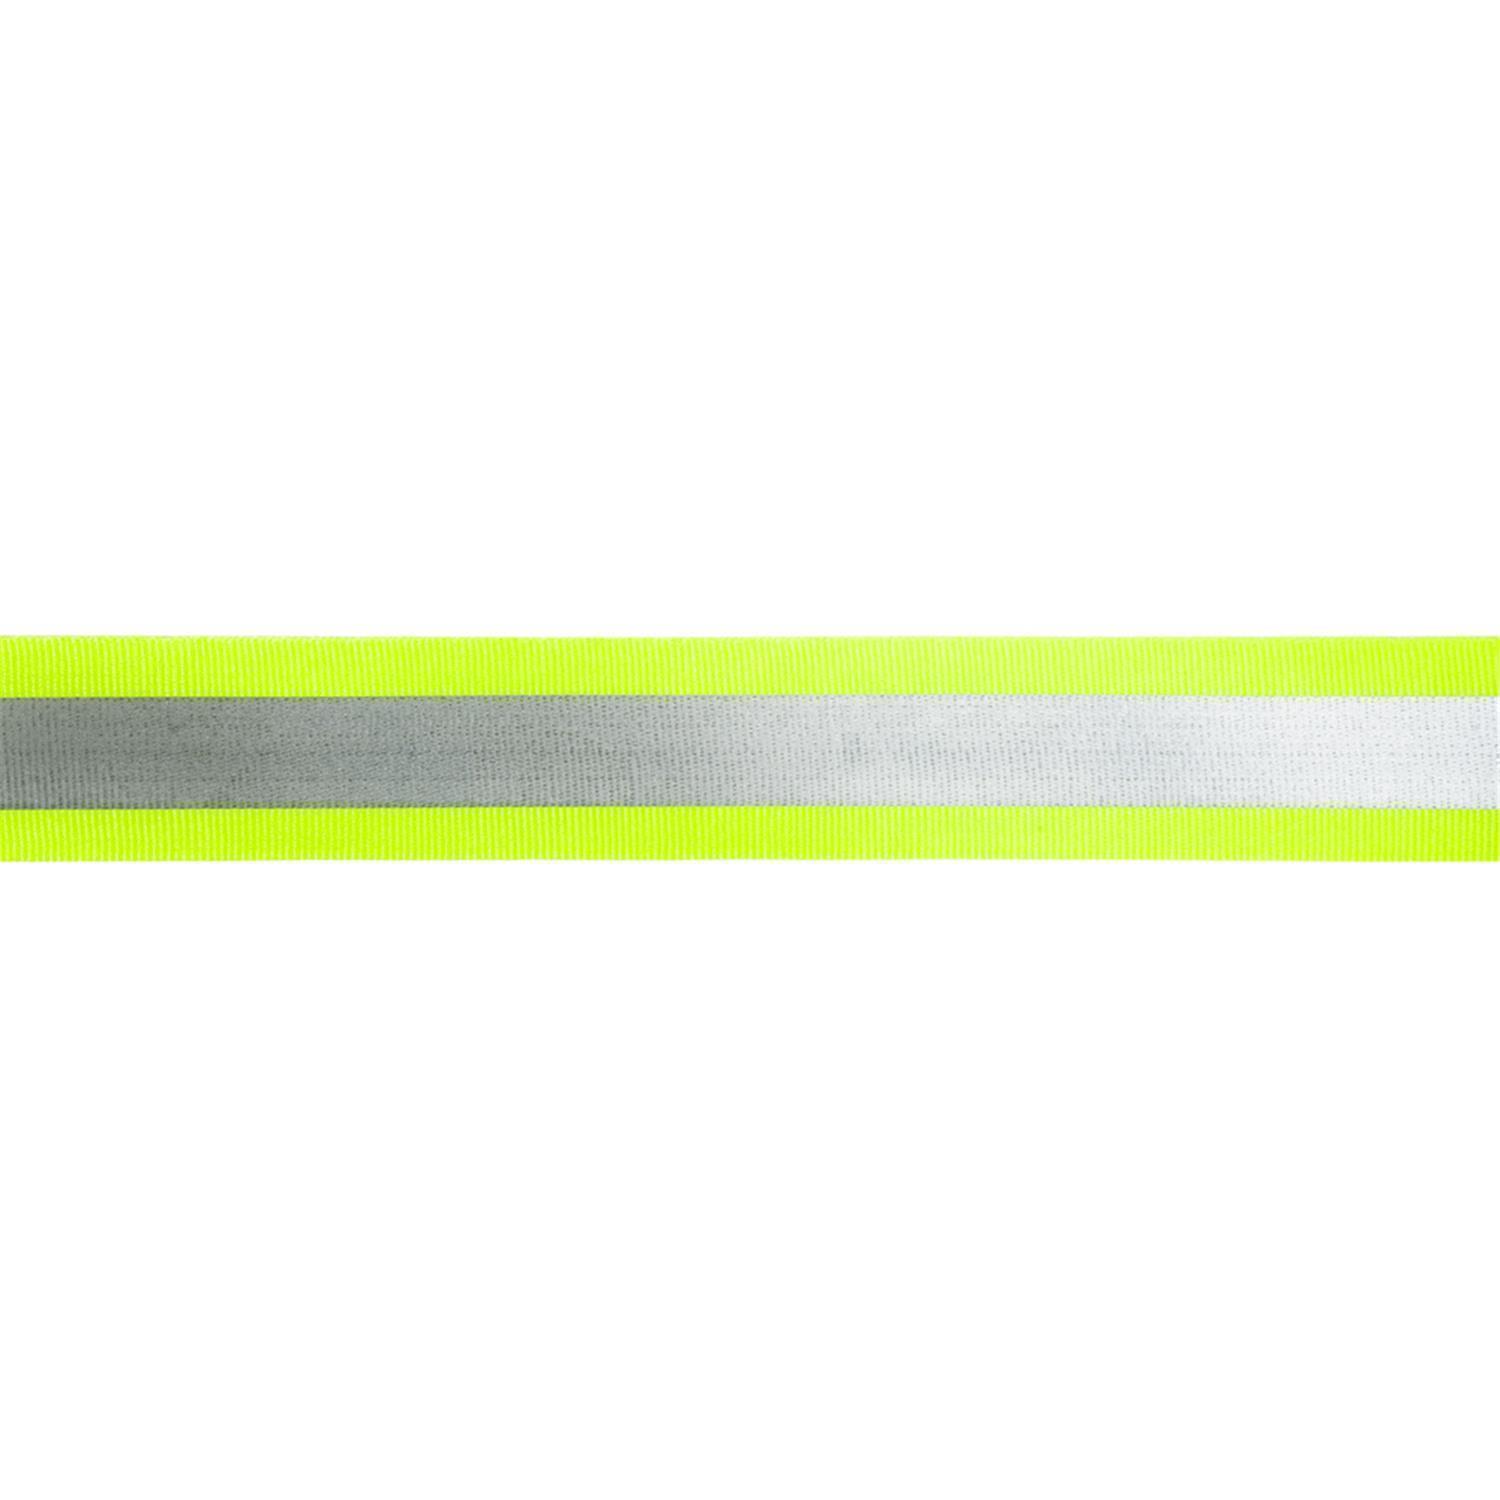 Reflektorband 40mm breit in 2 Farben gelb-silber 50 Meter